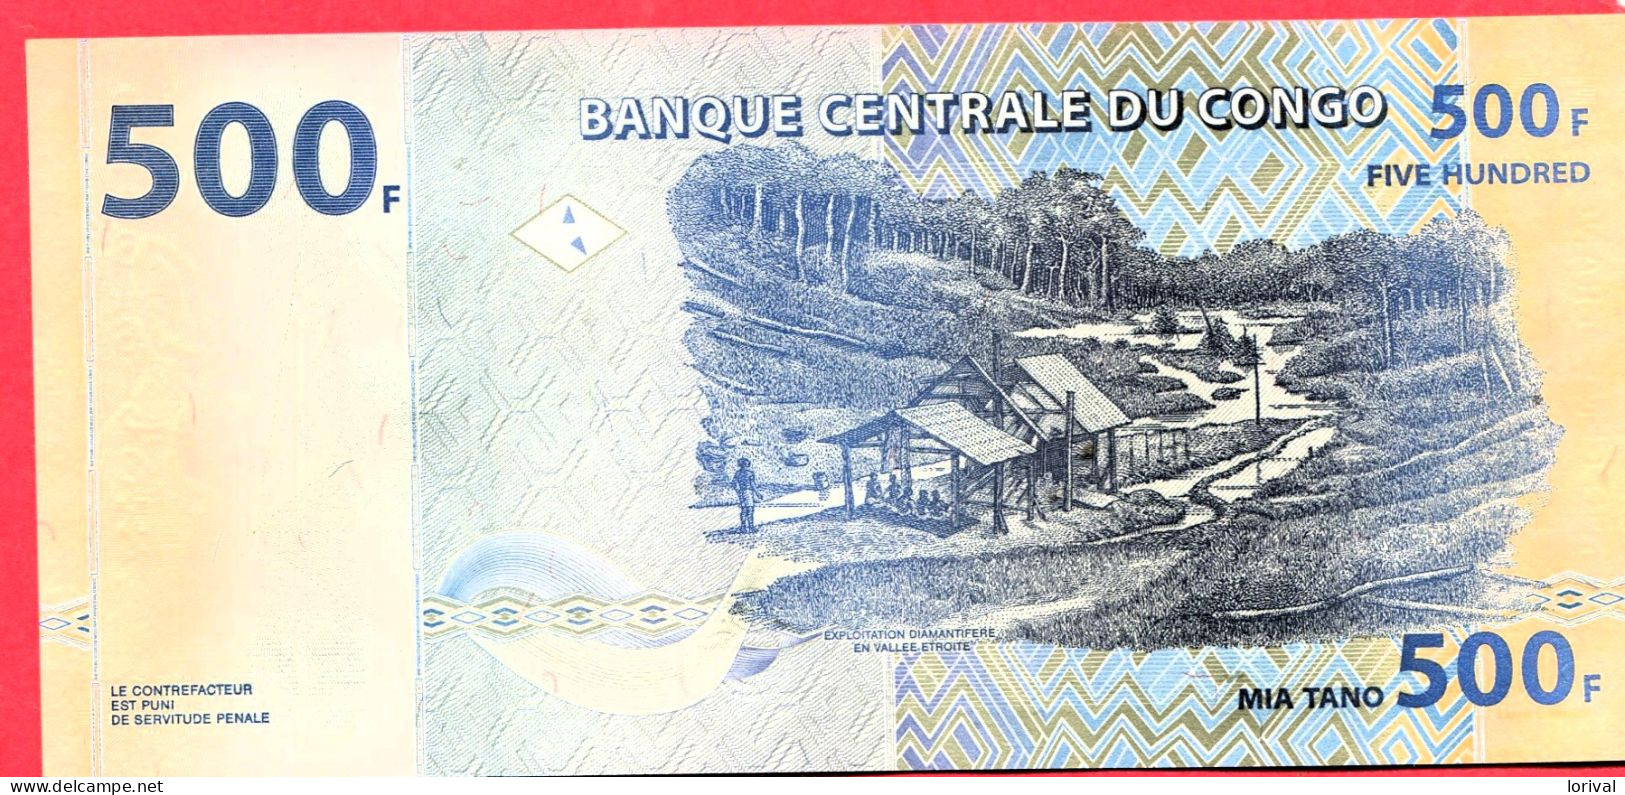 500 Francs Neuf 3 Euros - Republic Of Congo (Congo-Brazzaville)